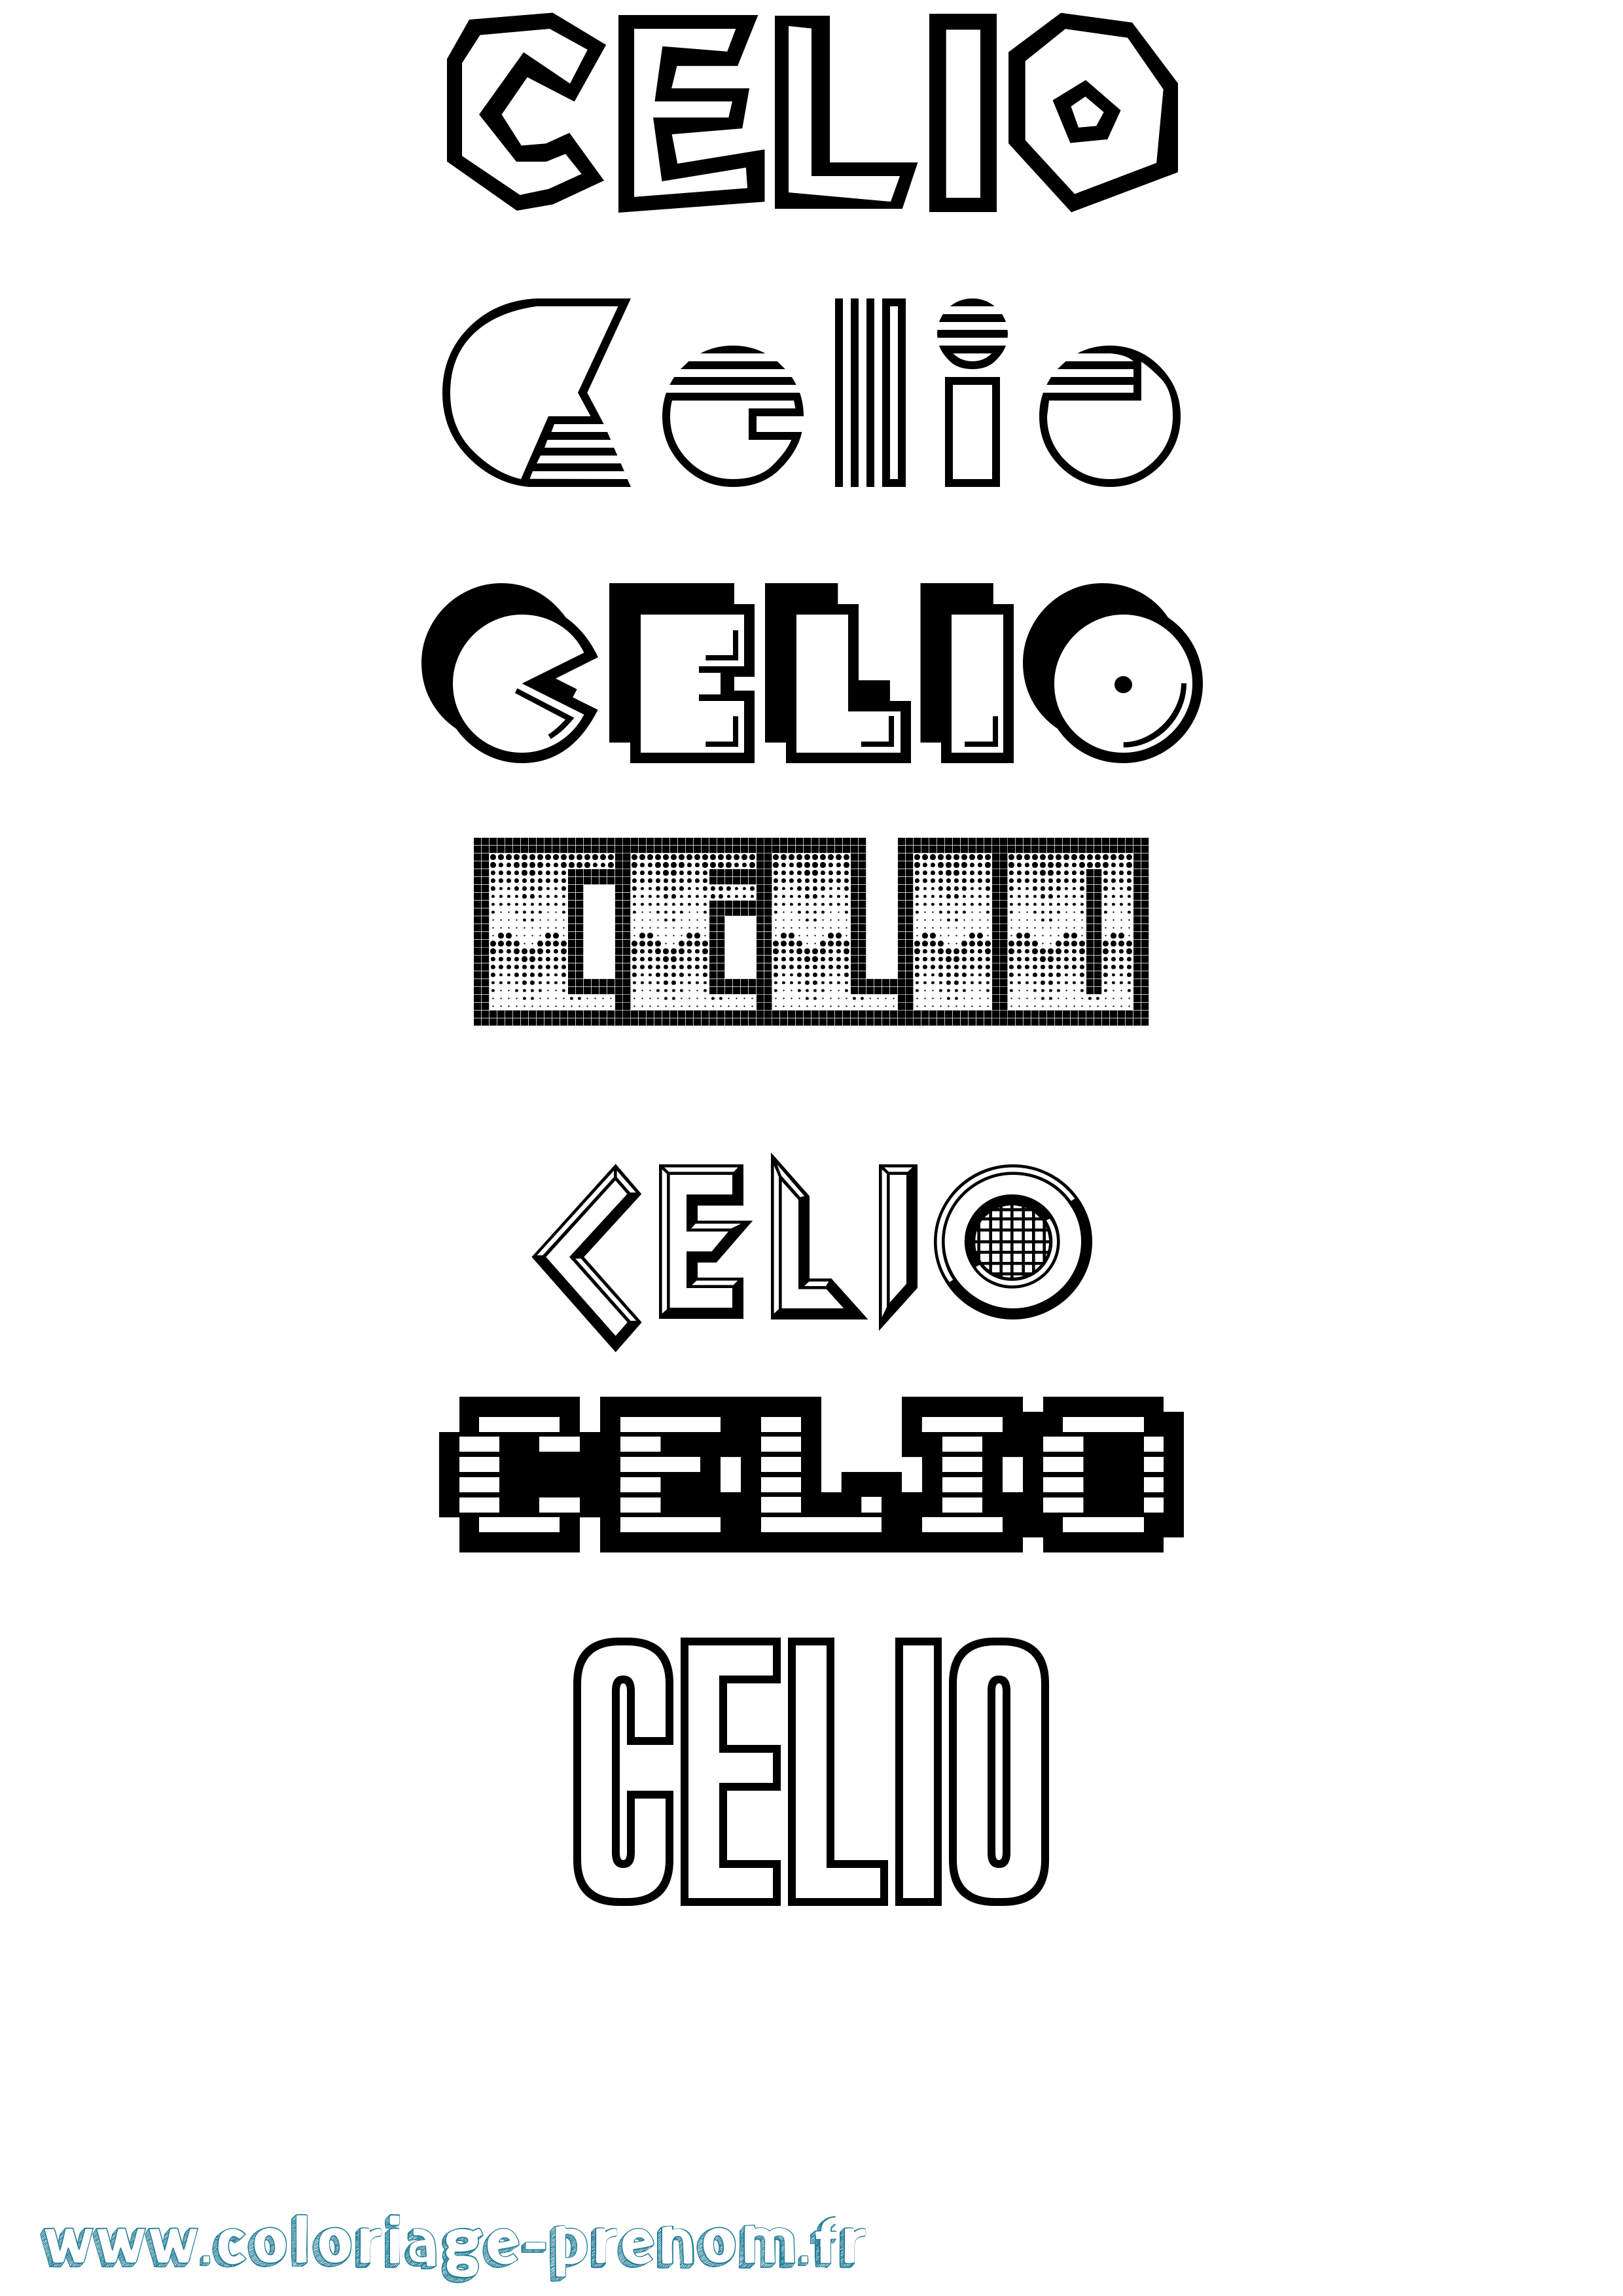 Coloriage prénom Celio Jeux Vidéos